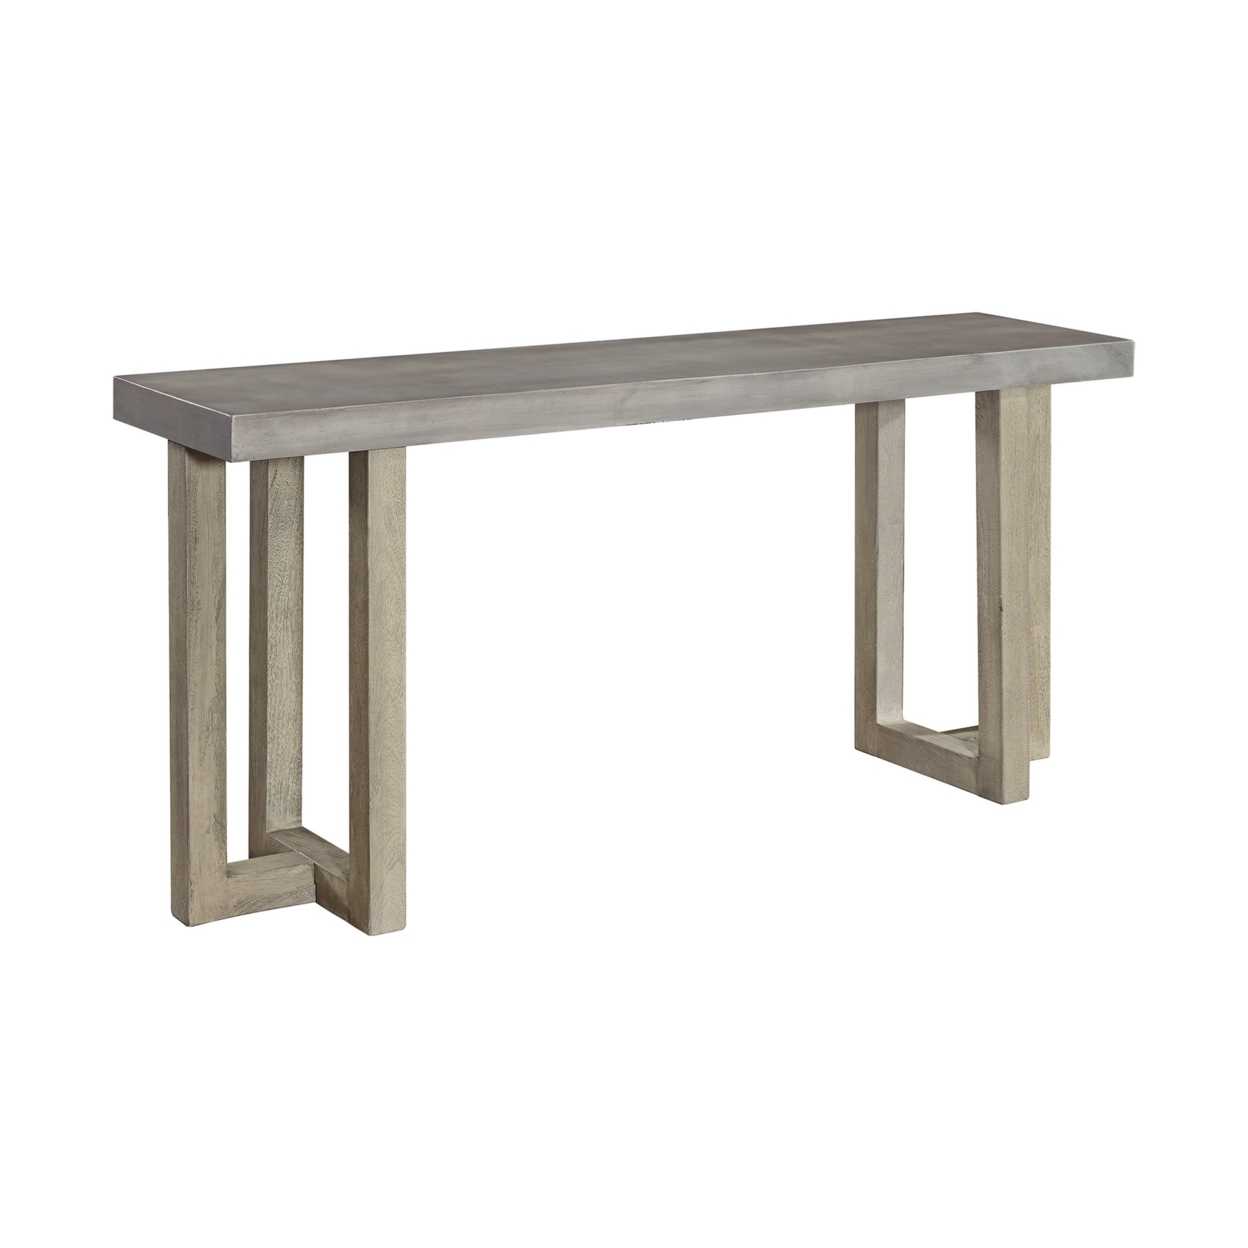 Lizi 67 Inch Sofa Console Table, Hand Applied Faux Concrete Finish, Gray- Saltoro Sherpi